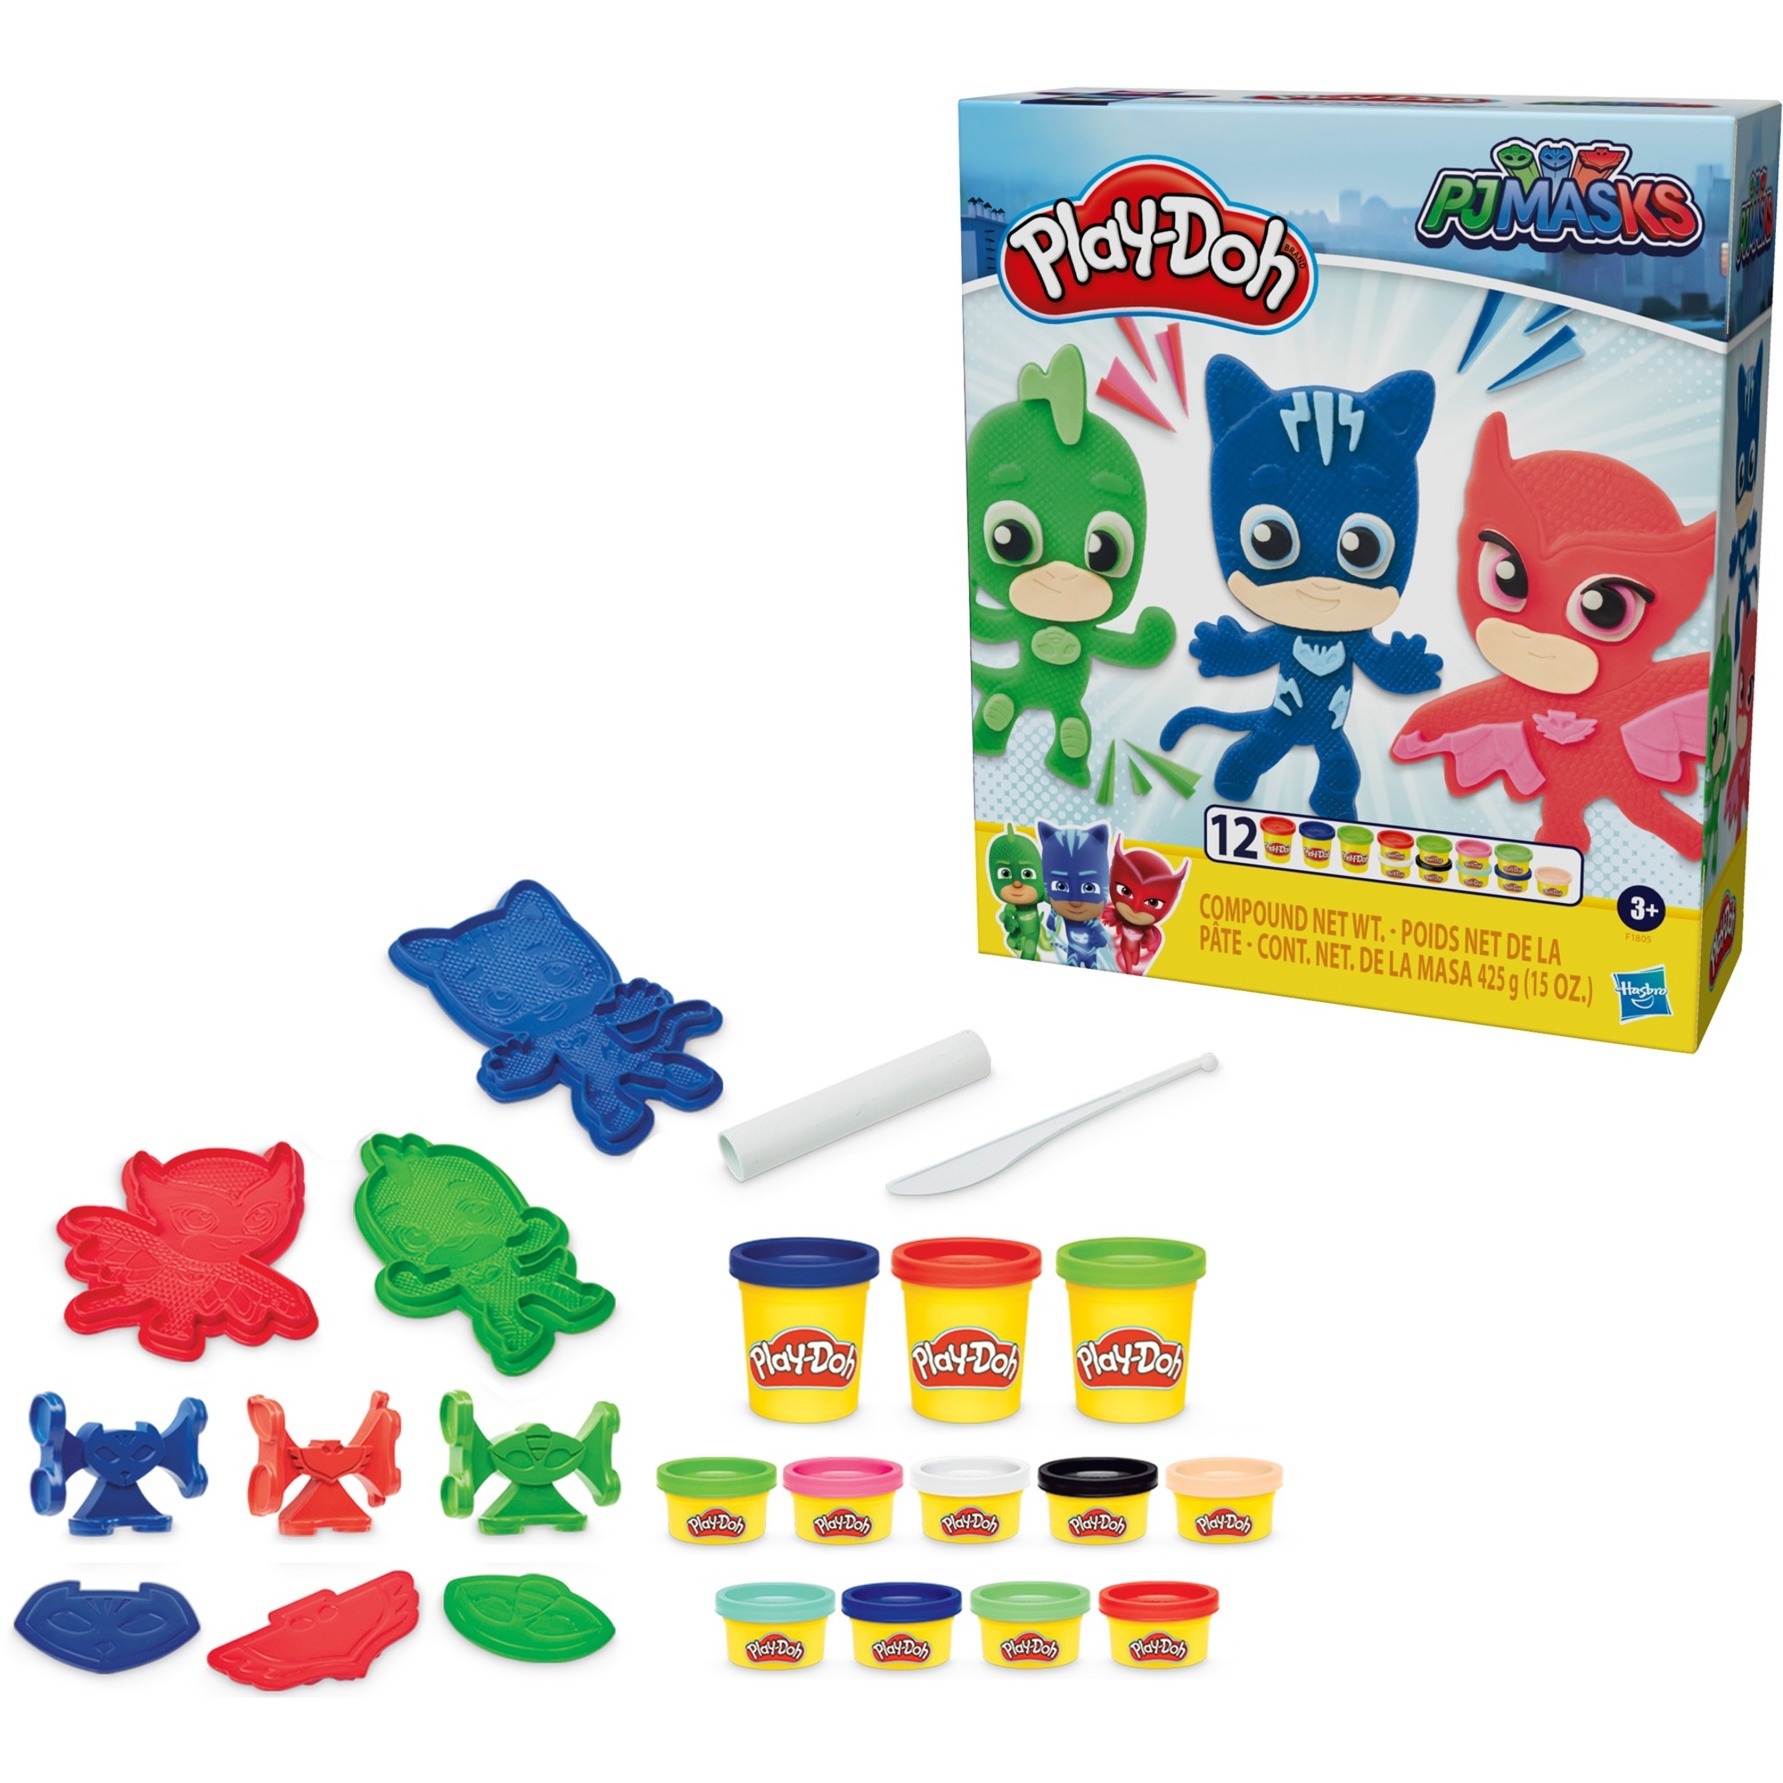 Image of Alternate - Play-Doh PJ Masks Helden-Knetset, Kneten online einkaufen bei Alternate